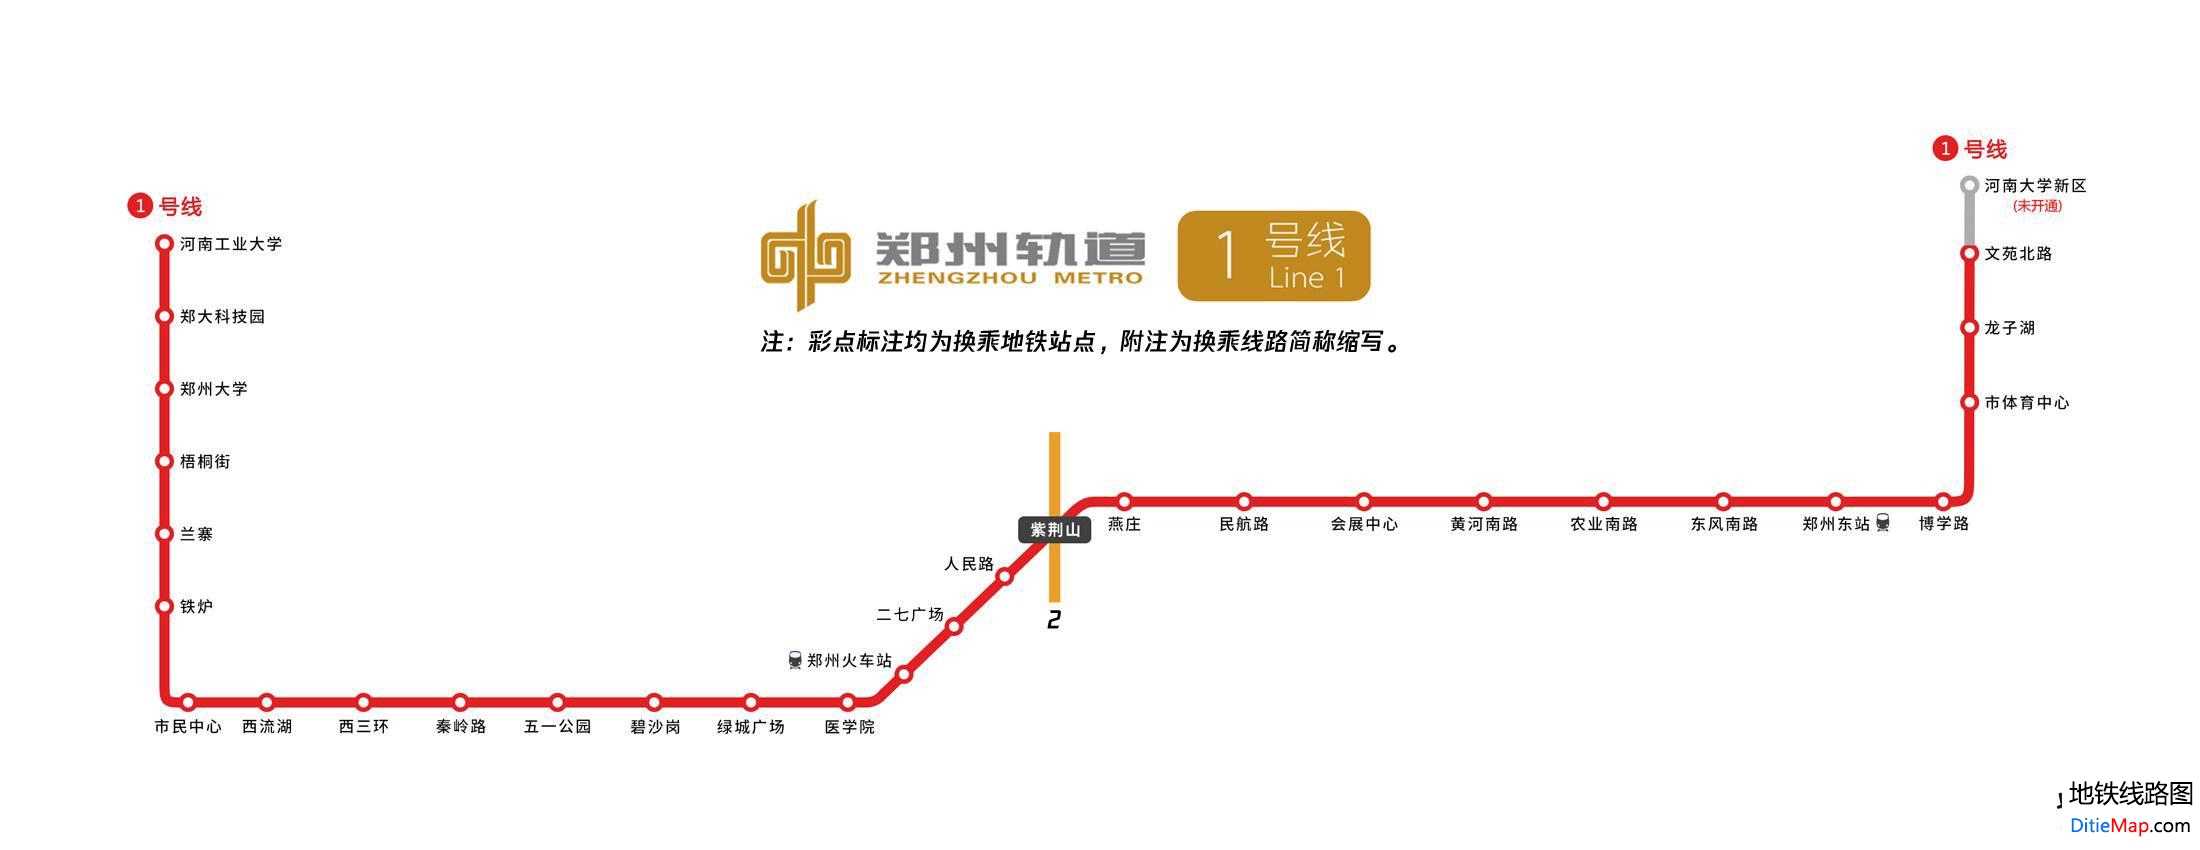 郑州地铁1号线运营时间 郑州地铁1号线线路图 郑州地铁1号线 郑州地铁